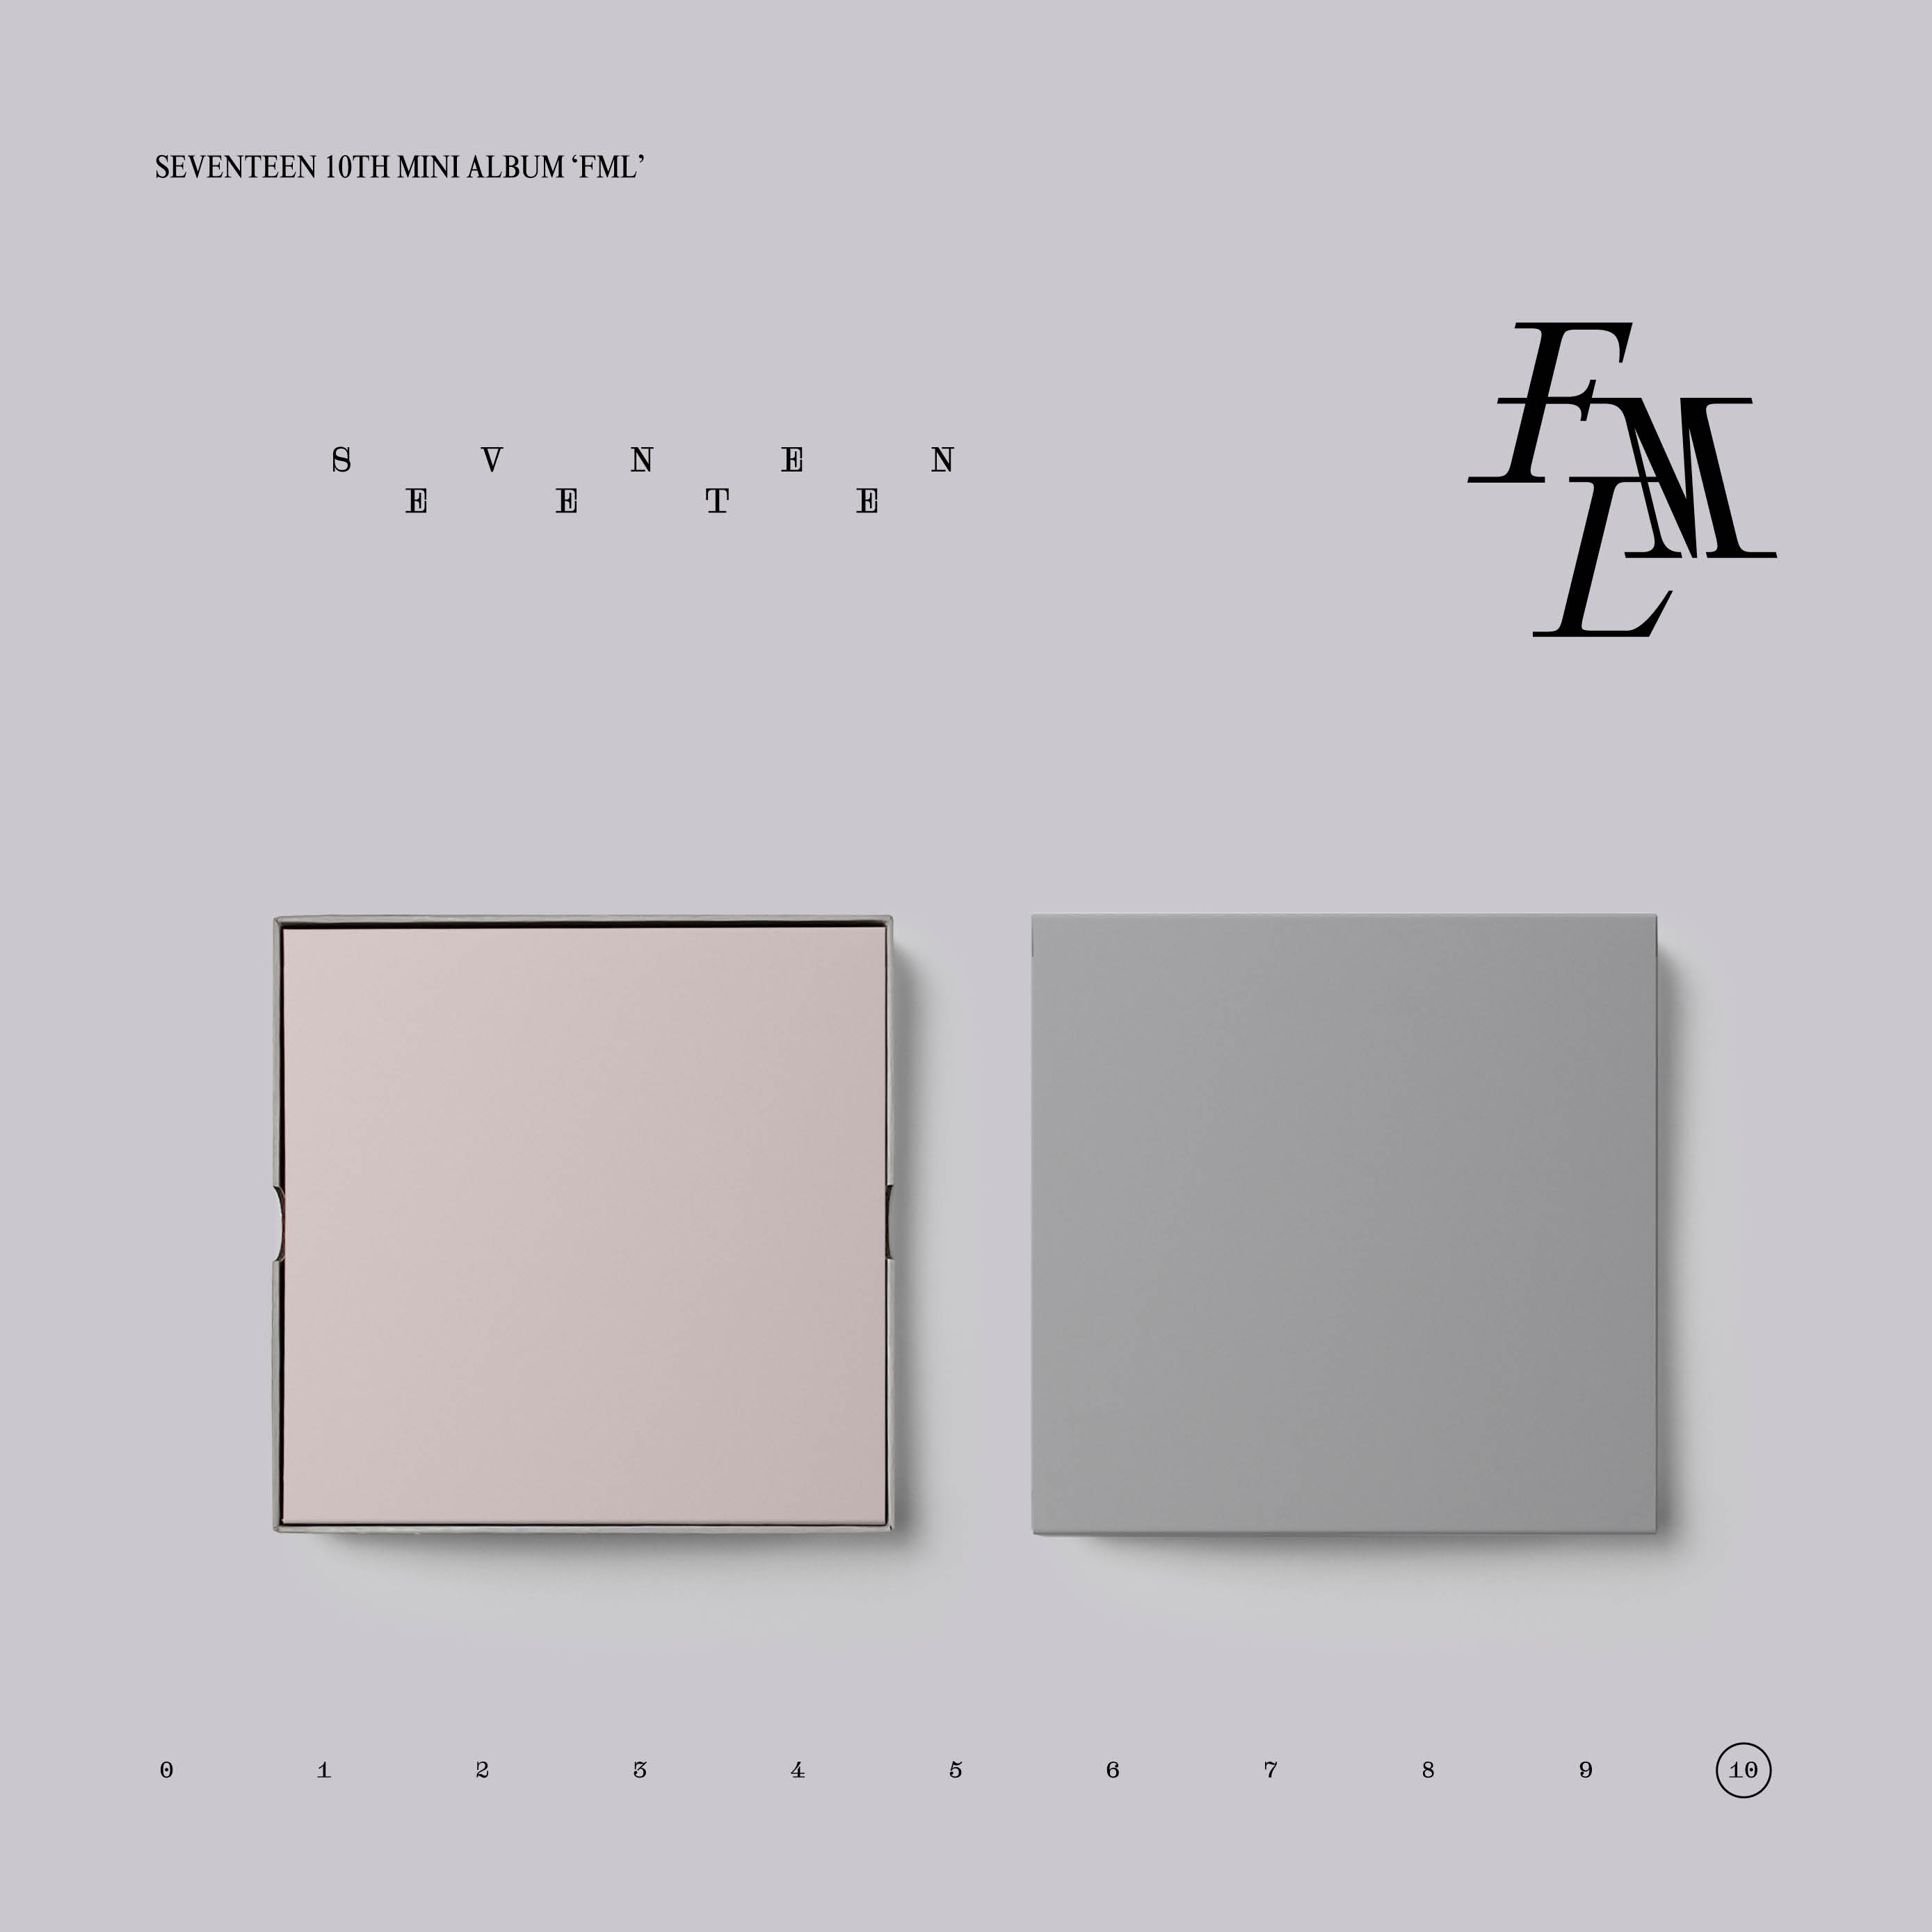 [拆卡专 无特典] SEVENTEEN - 10th Mini Album [FML] (CARAT Ver.)_尹净汉吧